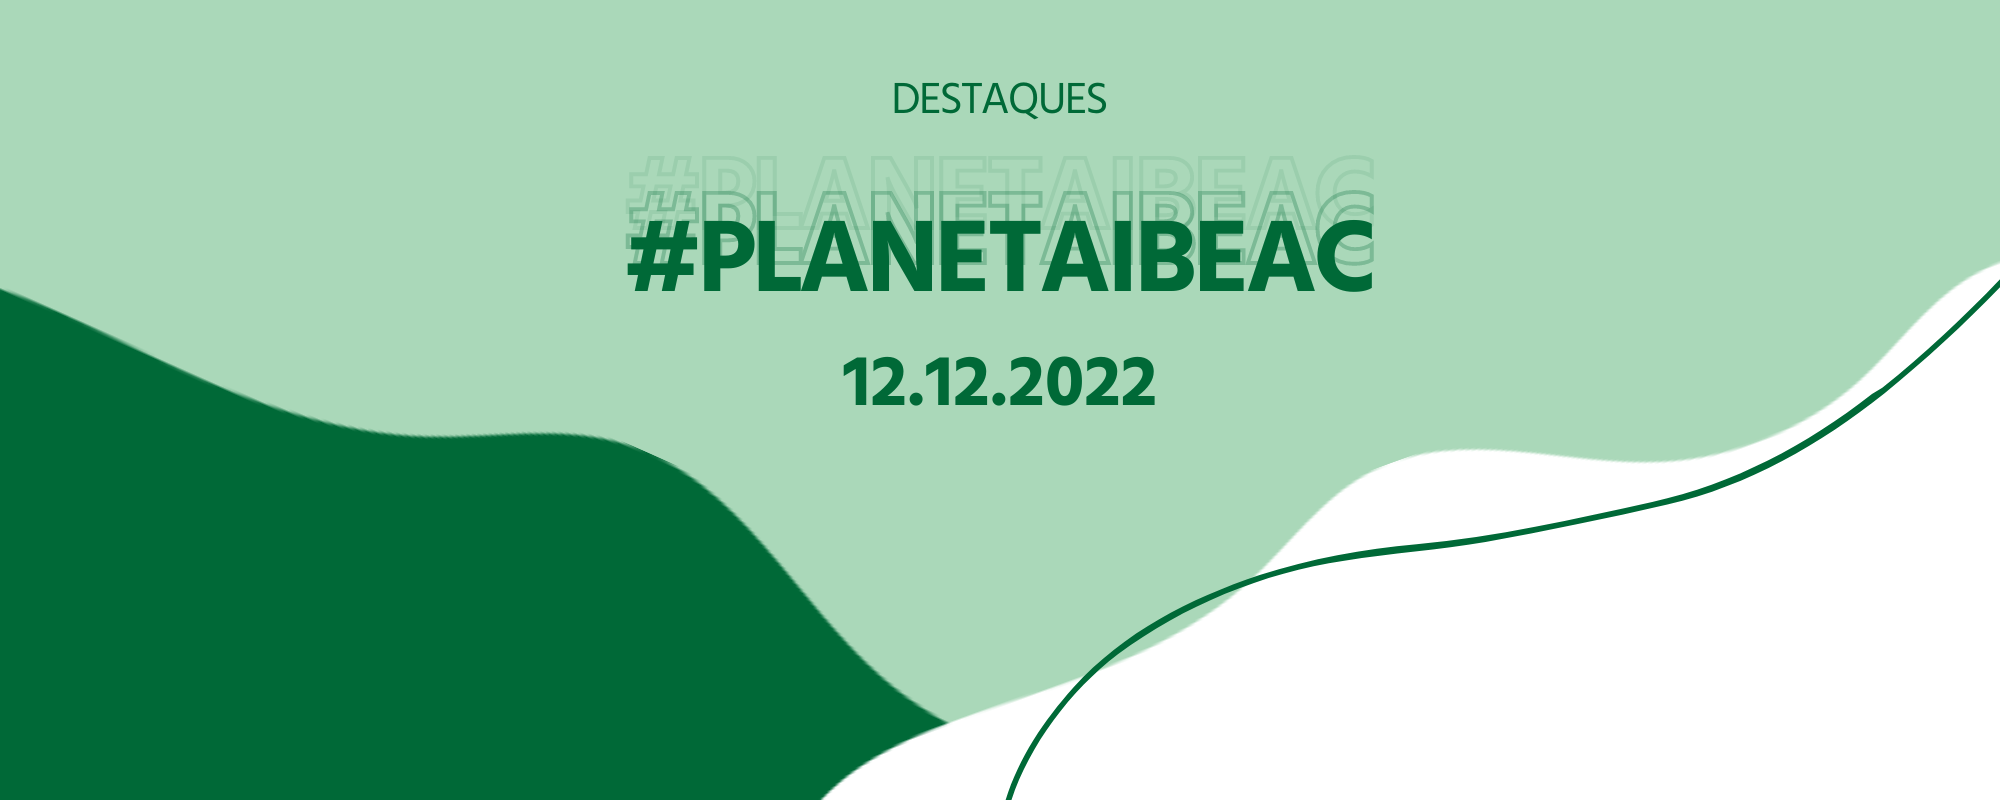 Destaques #PlanetaIbeac 12.12.2022